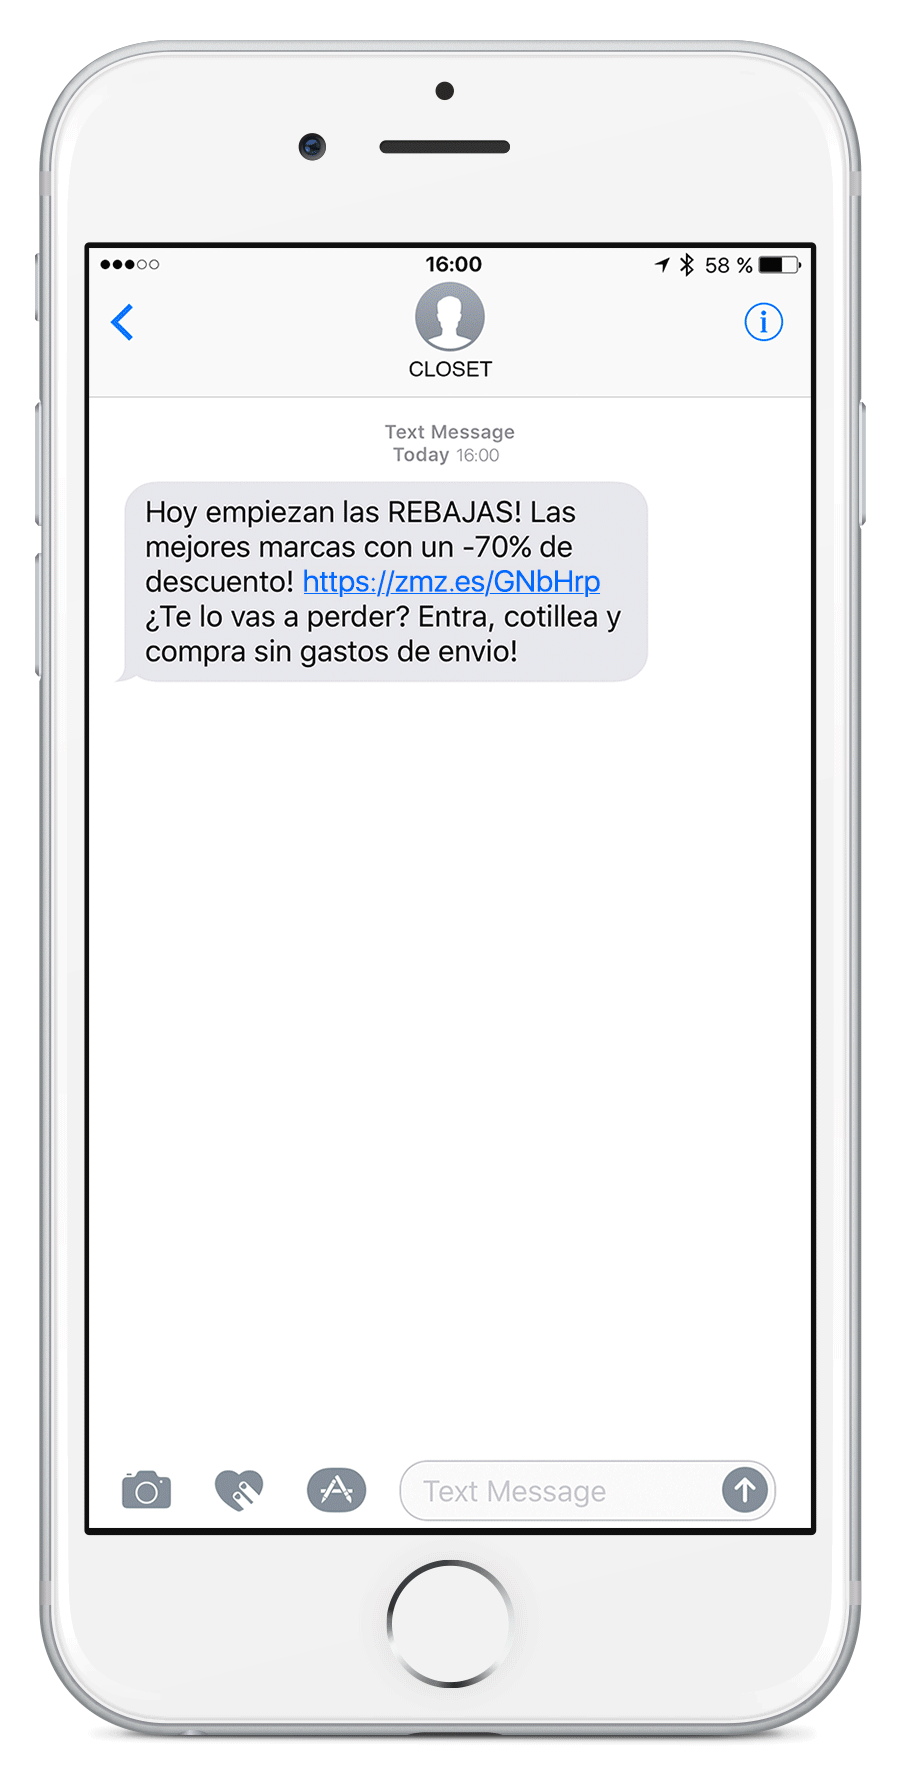 Ejemplo de SMS con URL corta - Mensagia